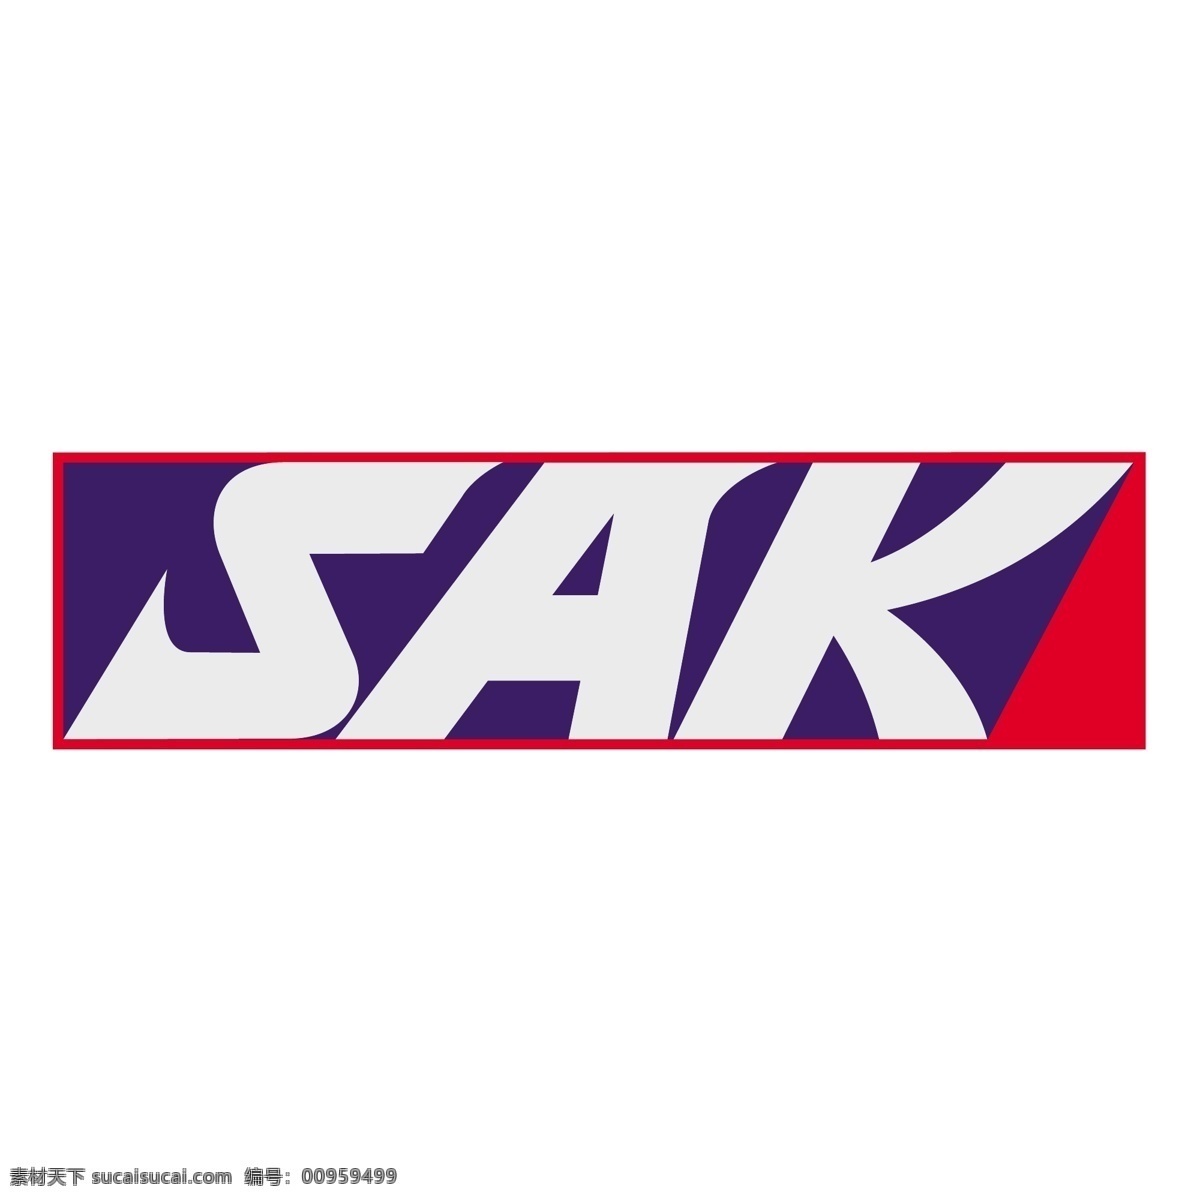 sak 标识 公司 免费 品牌 品牌标识 商标 矢量标志下载 免费矢量标识 矢量 psd源文件 logo设计